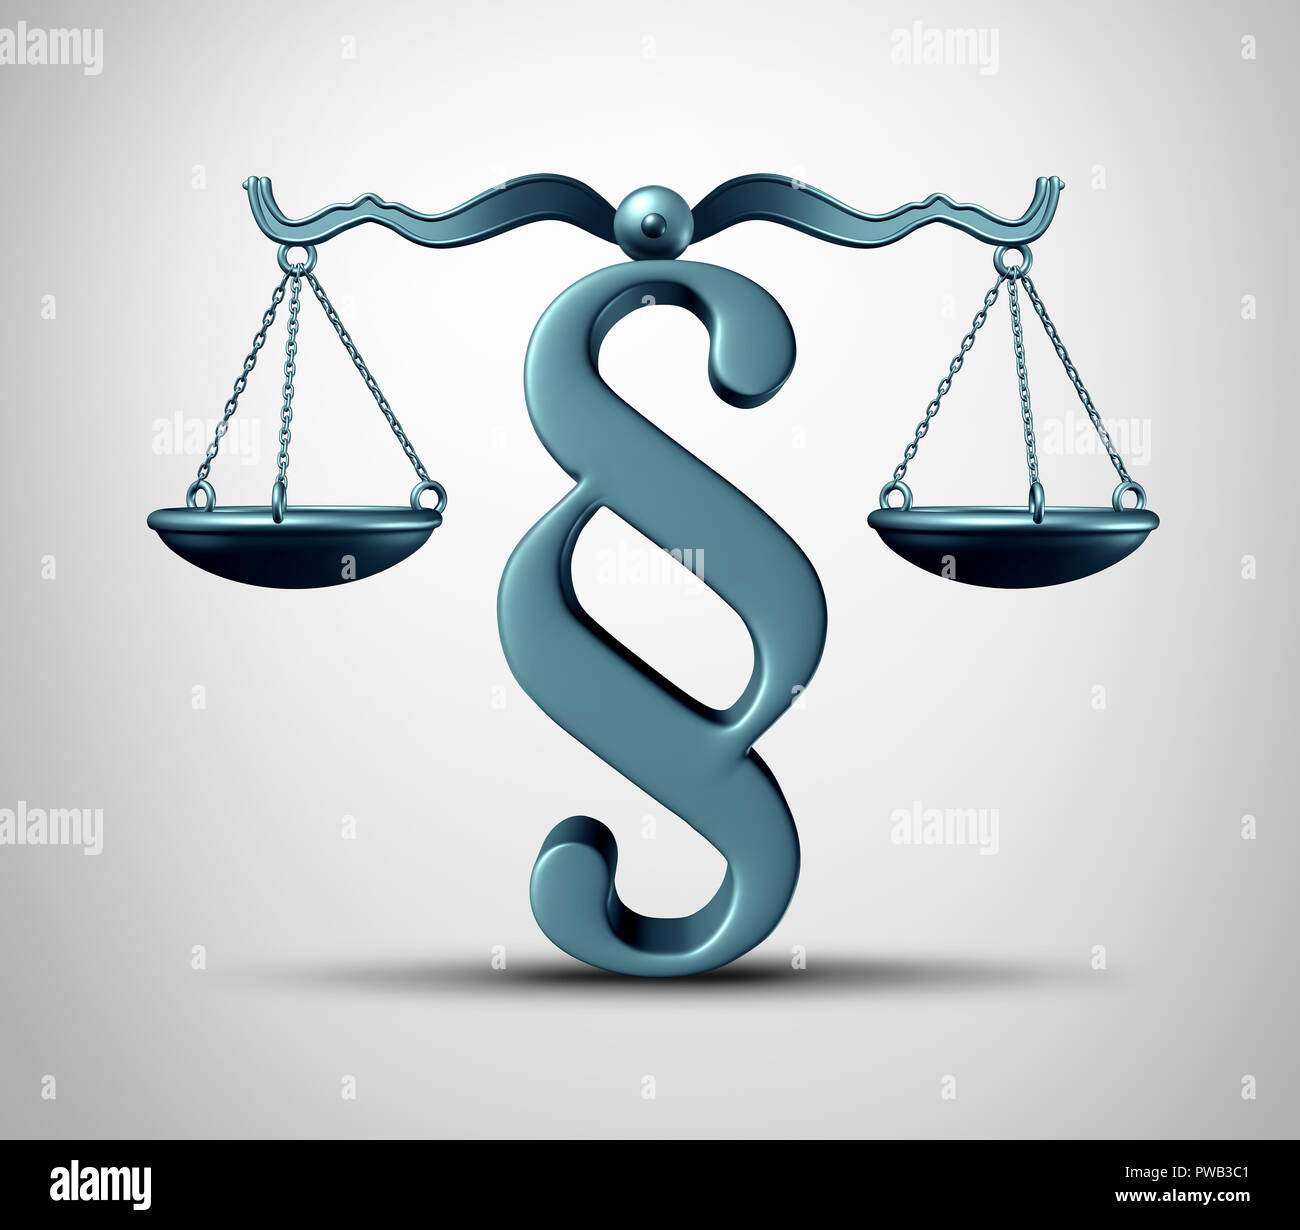 Absatz anmelden Rechtliche Symbol als Gesetz Skala Balance mit einem schiedsverfahren oder Rechtsvorschriften Symbol als 3D-Render. Stockfoto